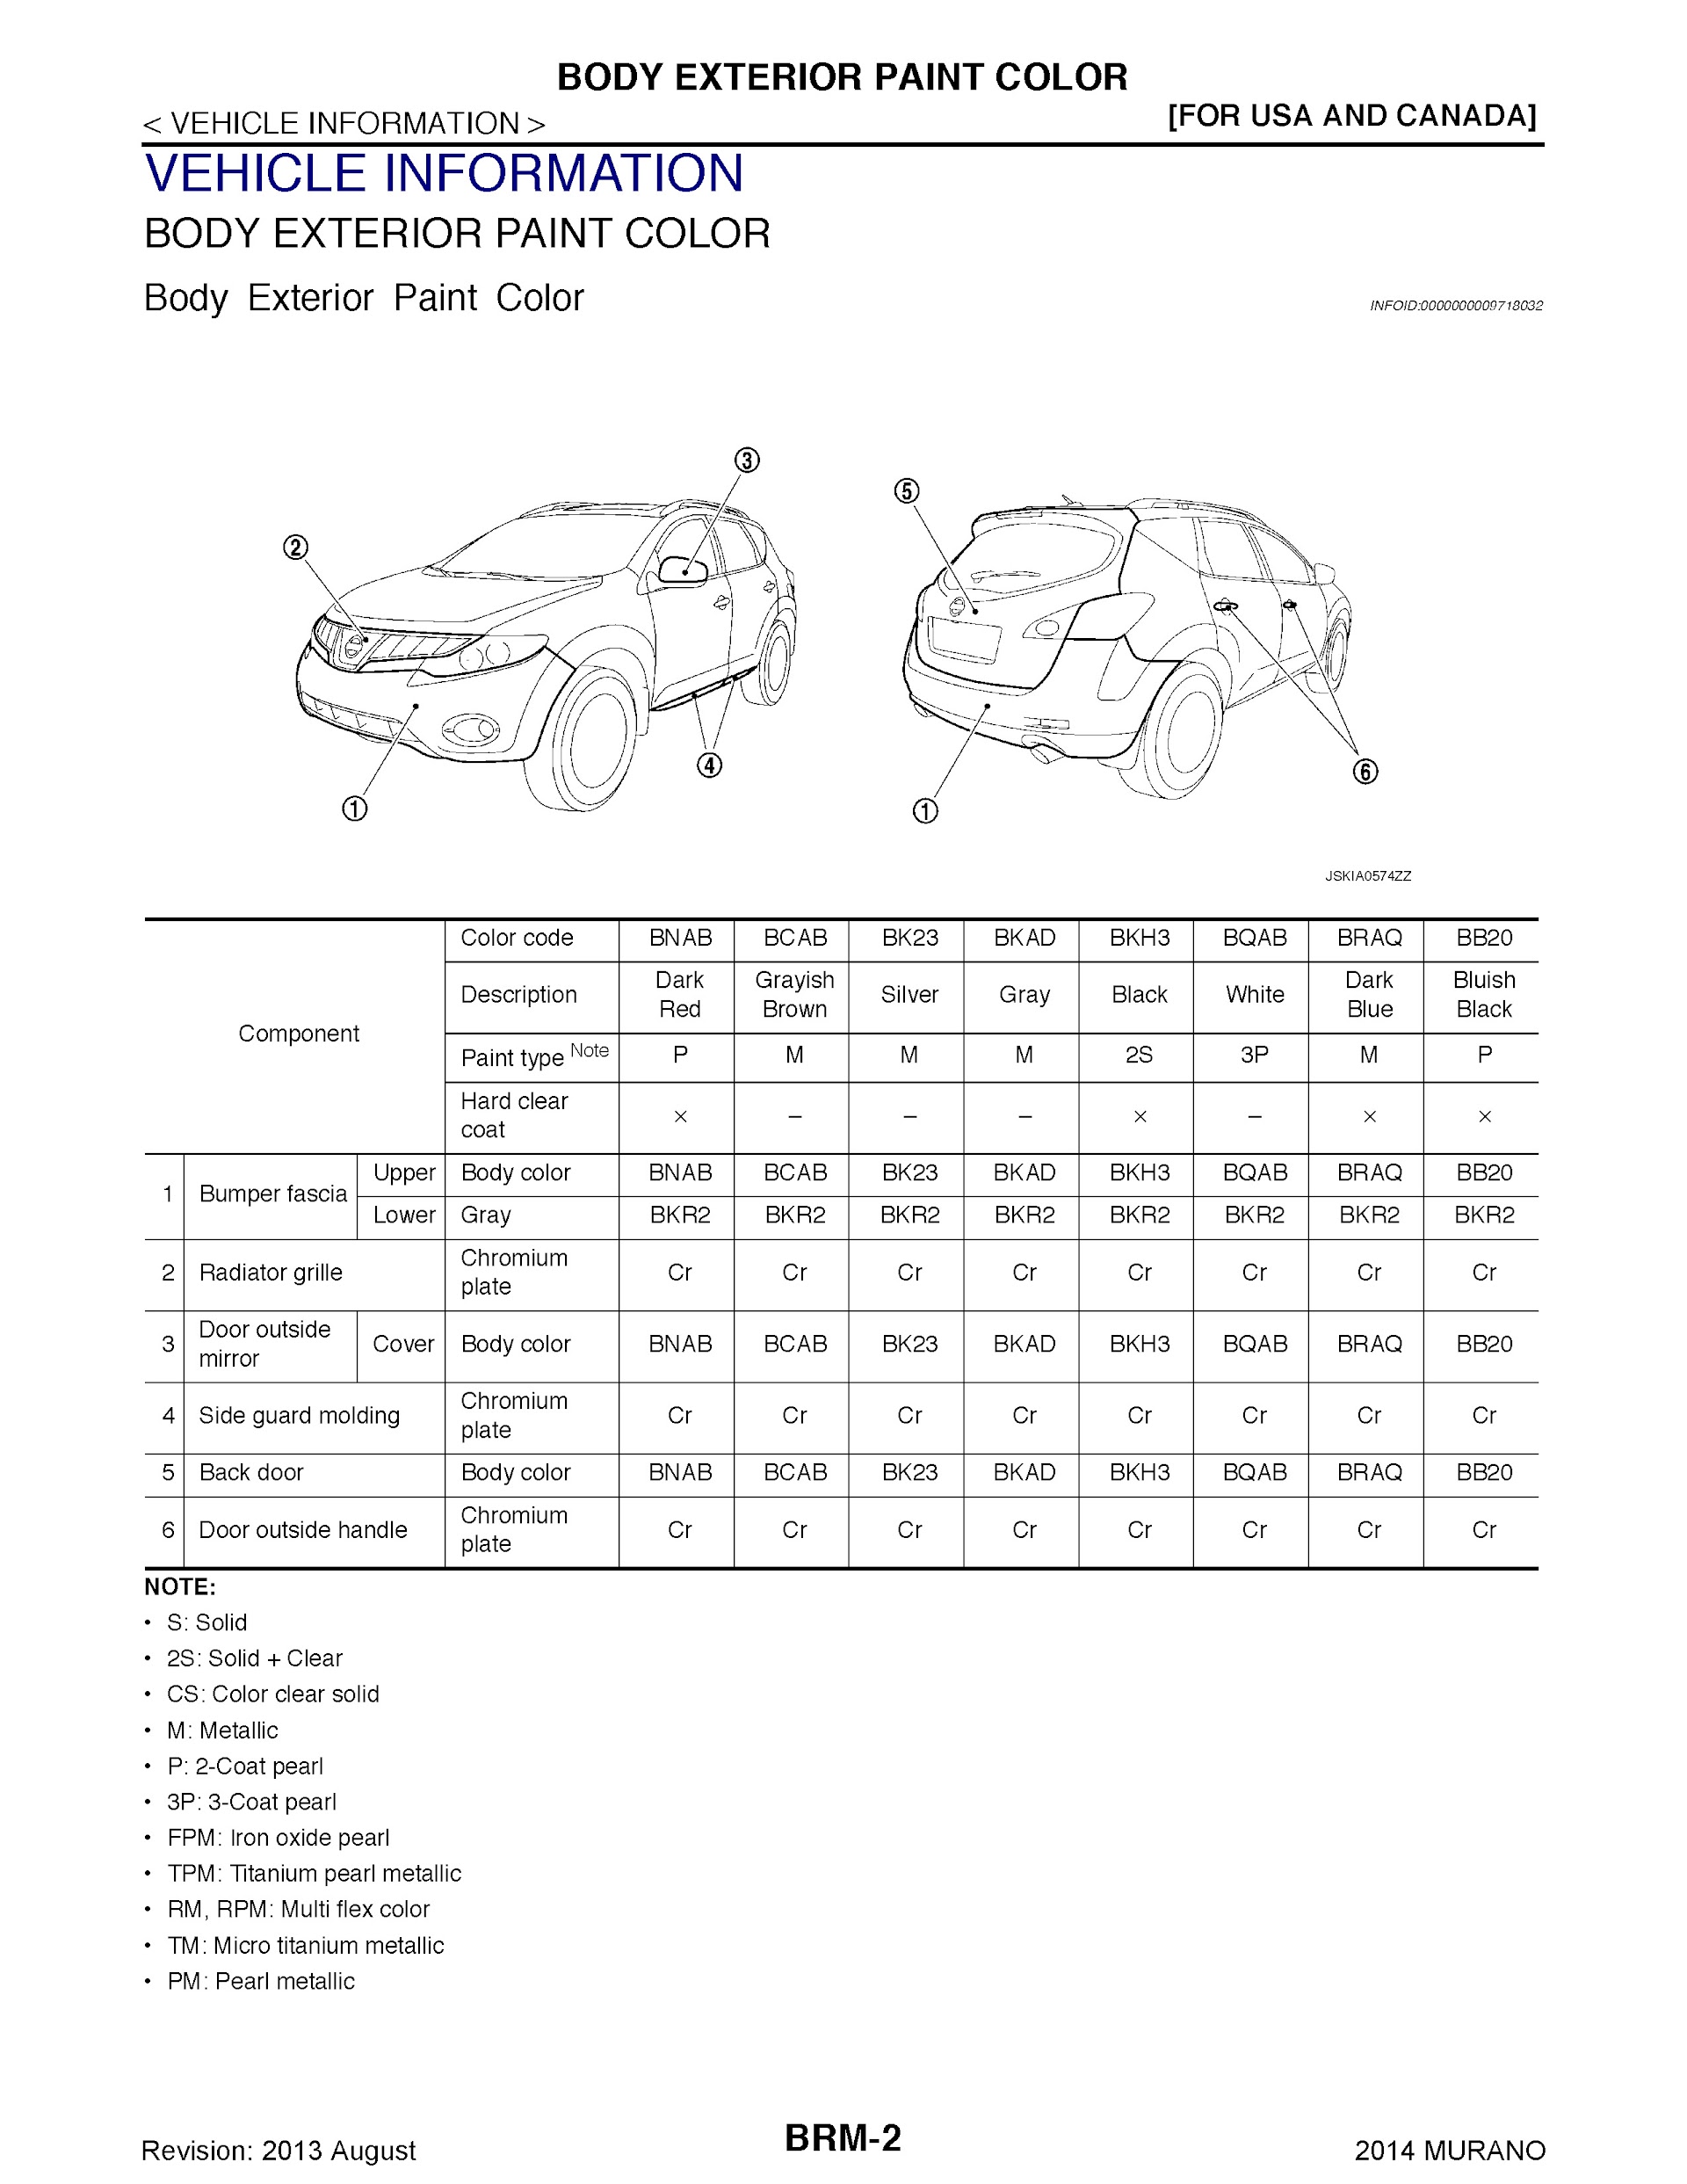 2009-2014 Nissan Murano Repair Manual, Body Exterior Paint color